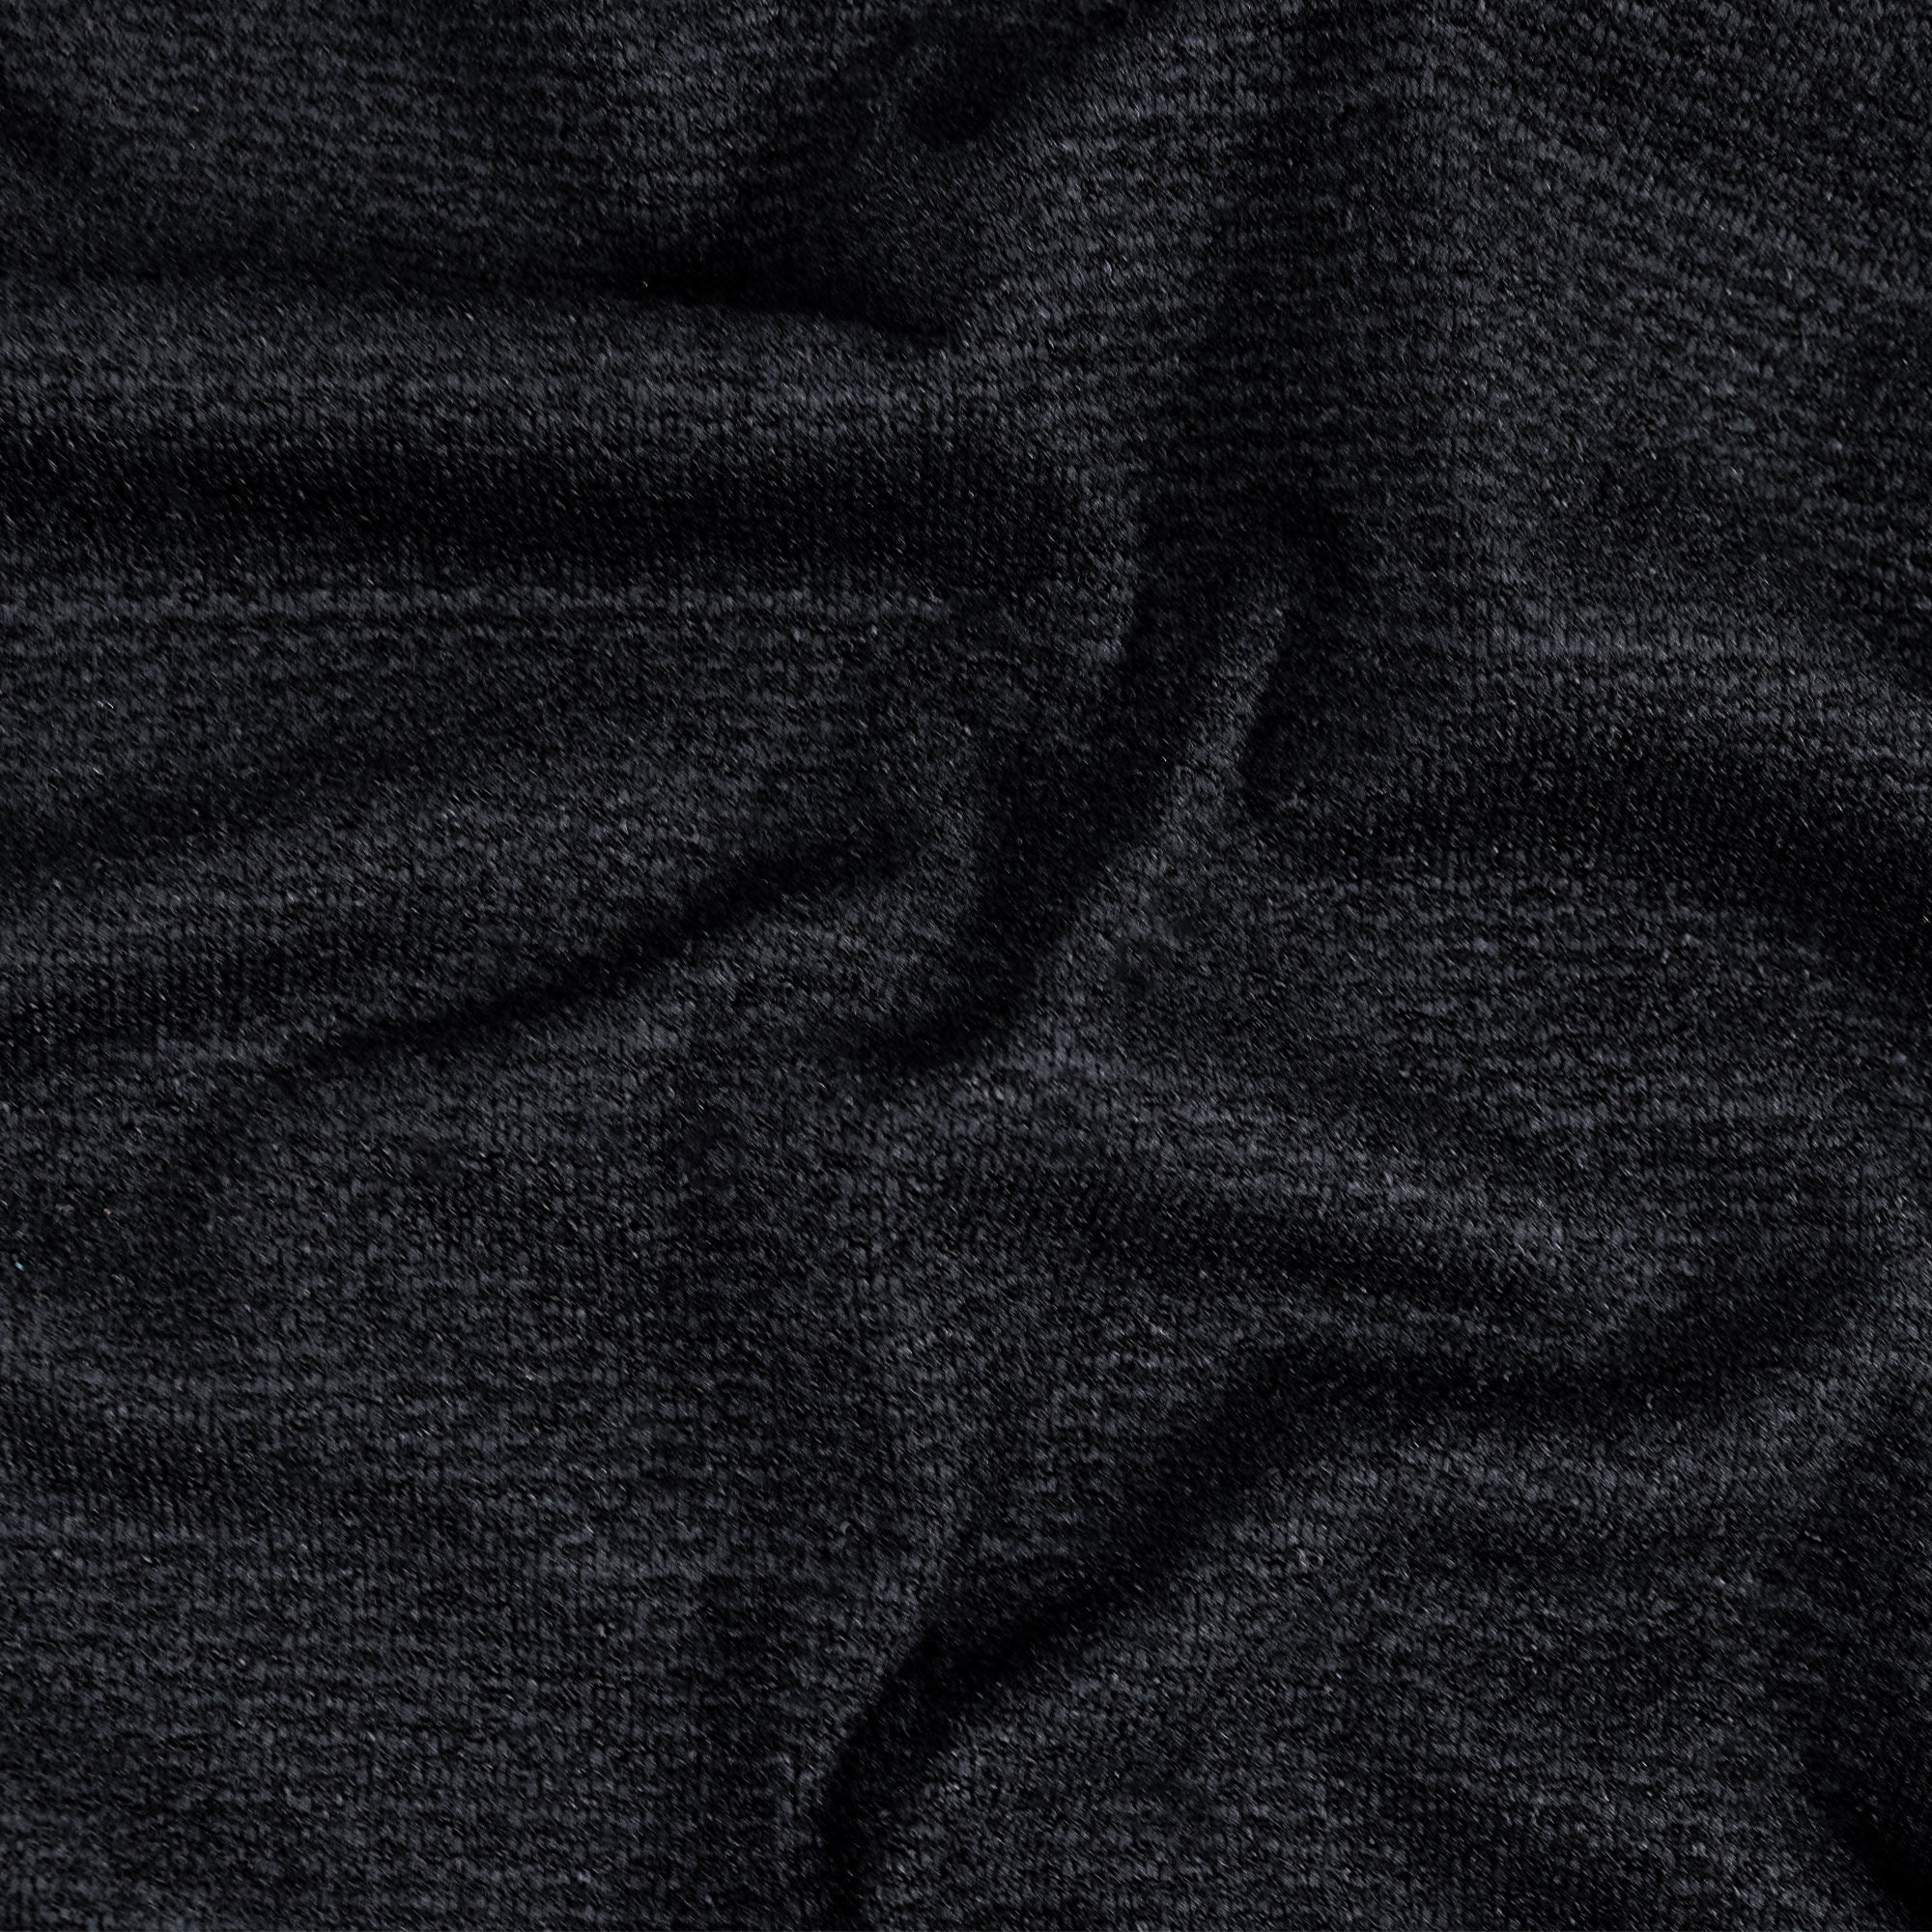 58-60 Polyester/rayon/spandex Black Stripe Mir Crezia | Etsy